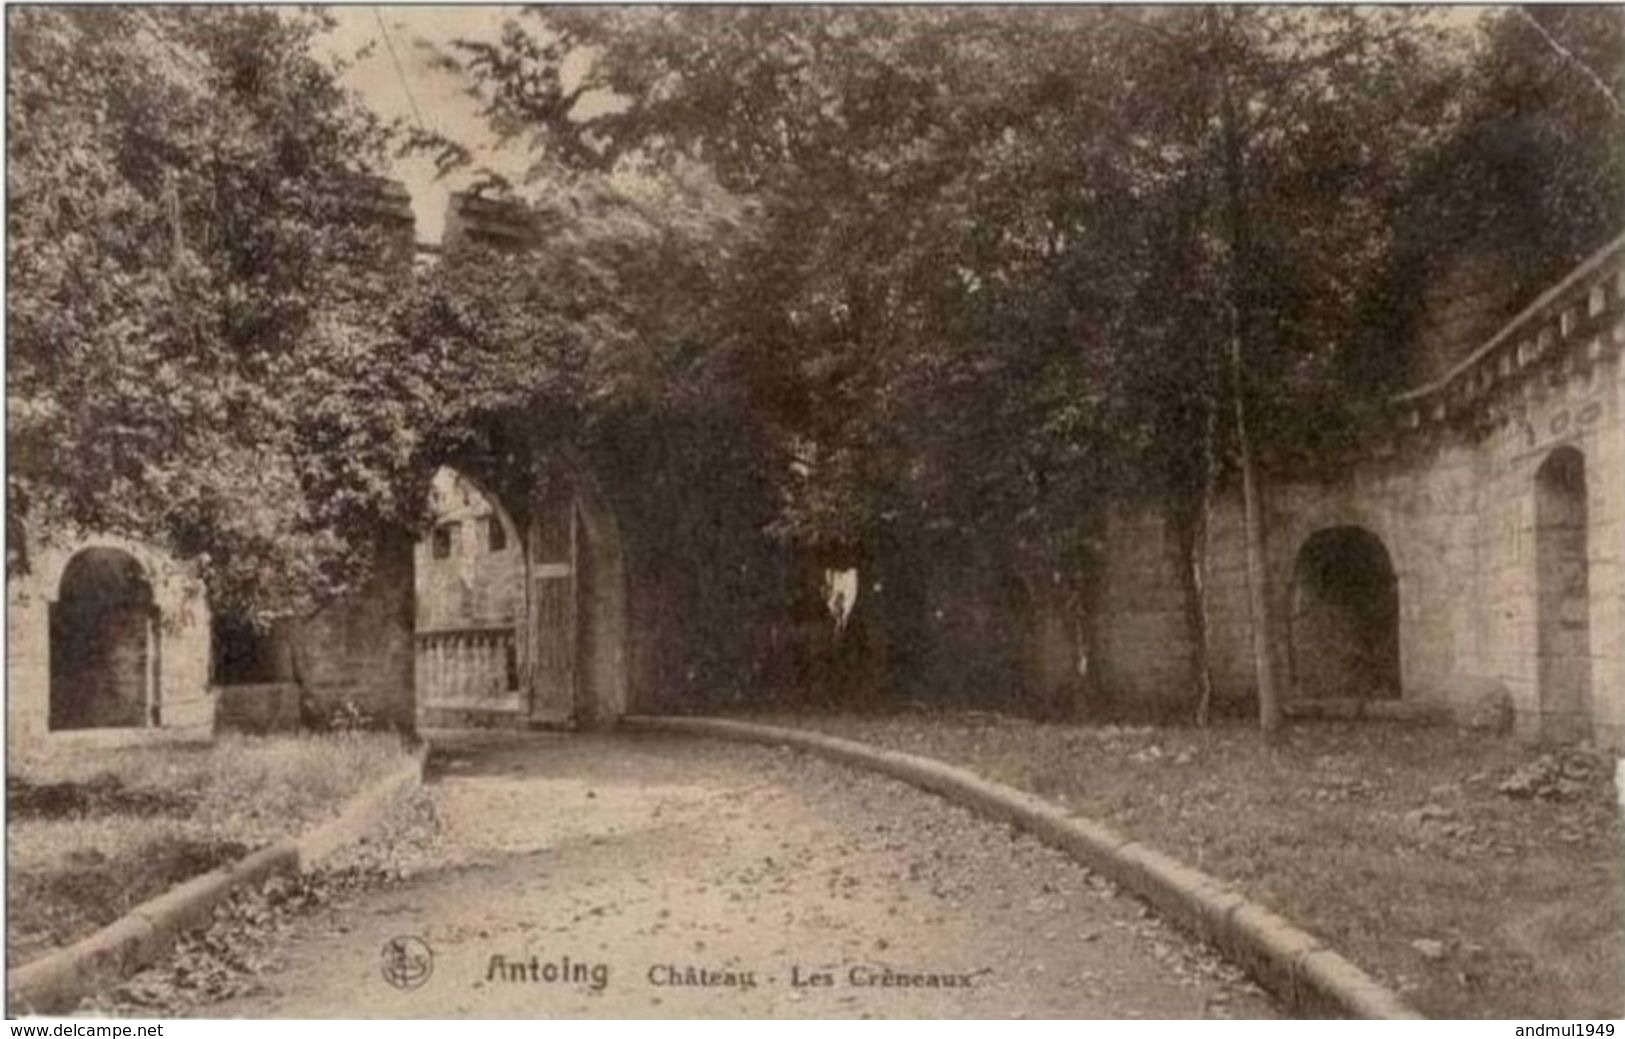 ANTOING - Château - Les Crêneaux - Edition Guilmain Et Co., Antoing - Antoing